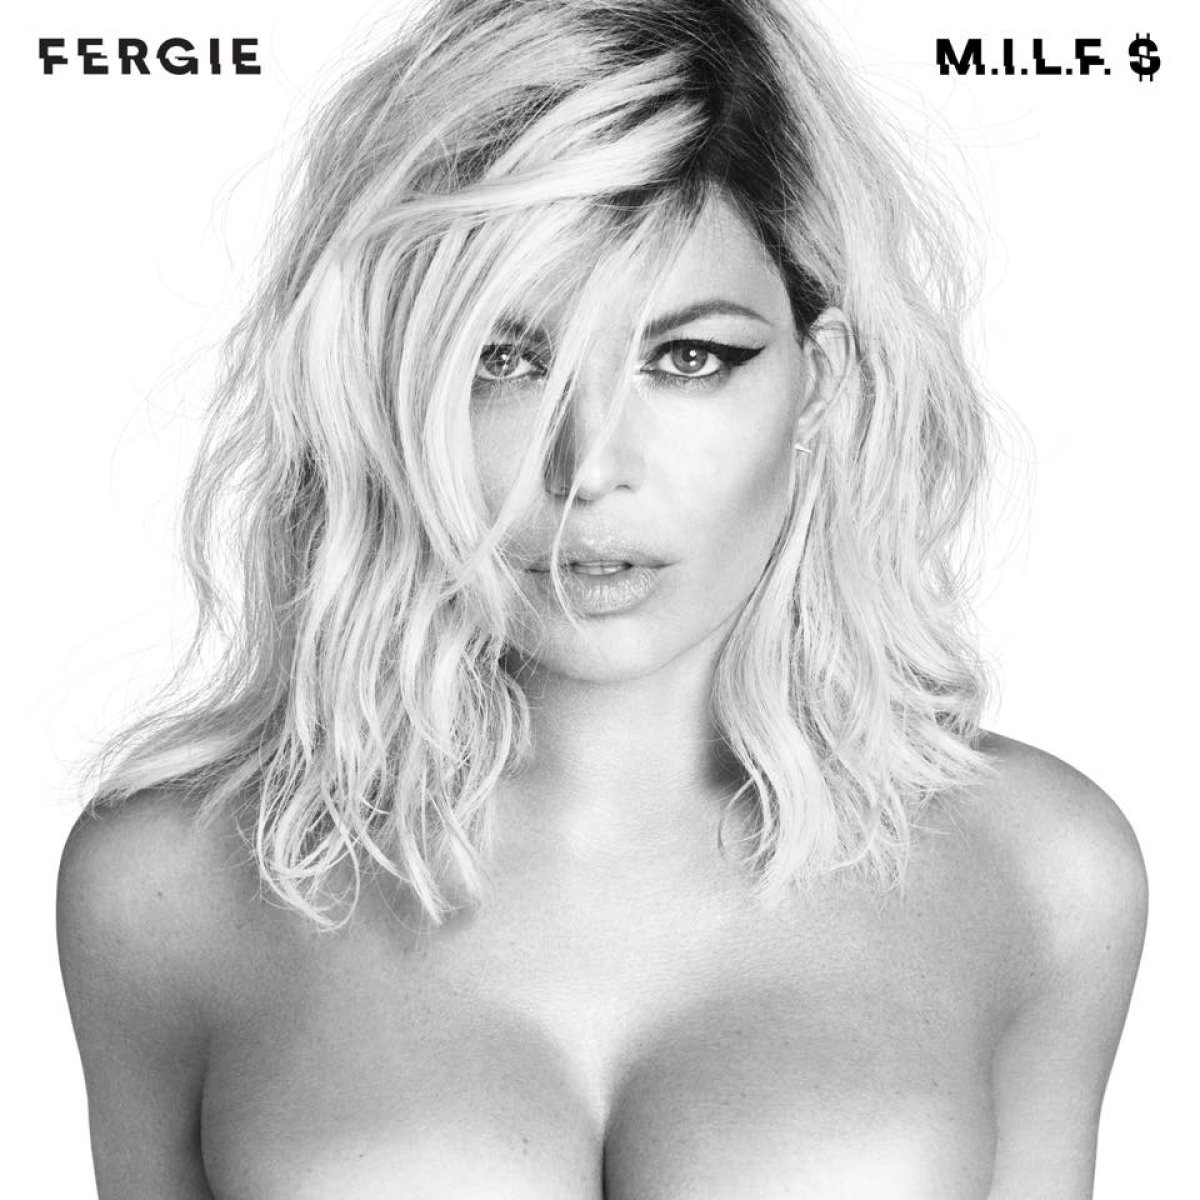 Fergie comparte la portada de su nuevo álbum en Instagram